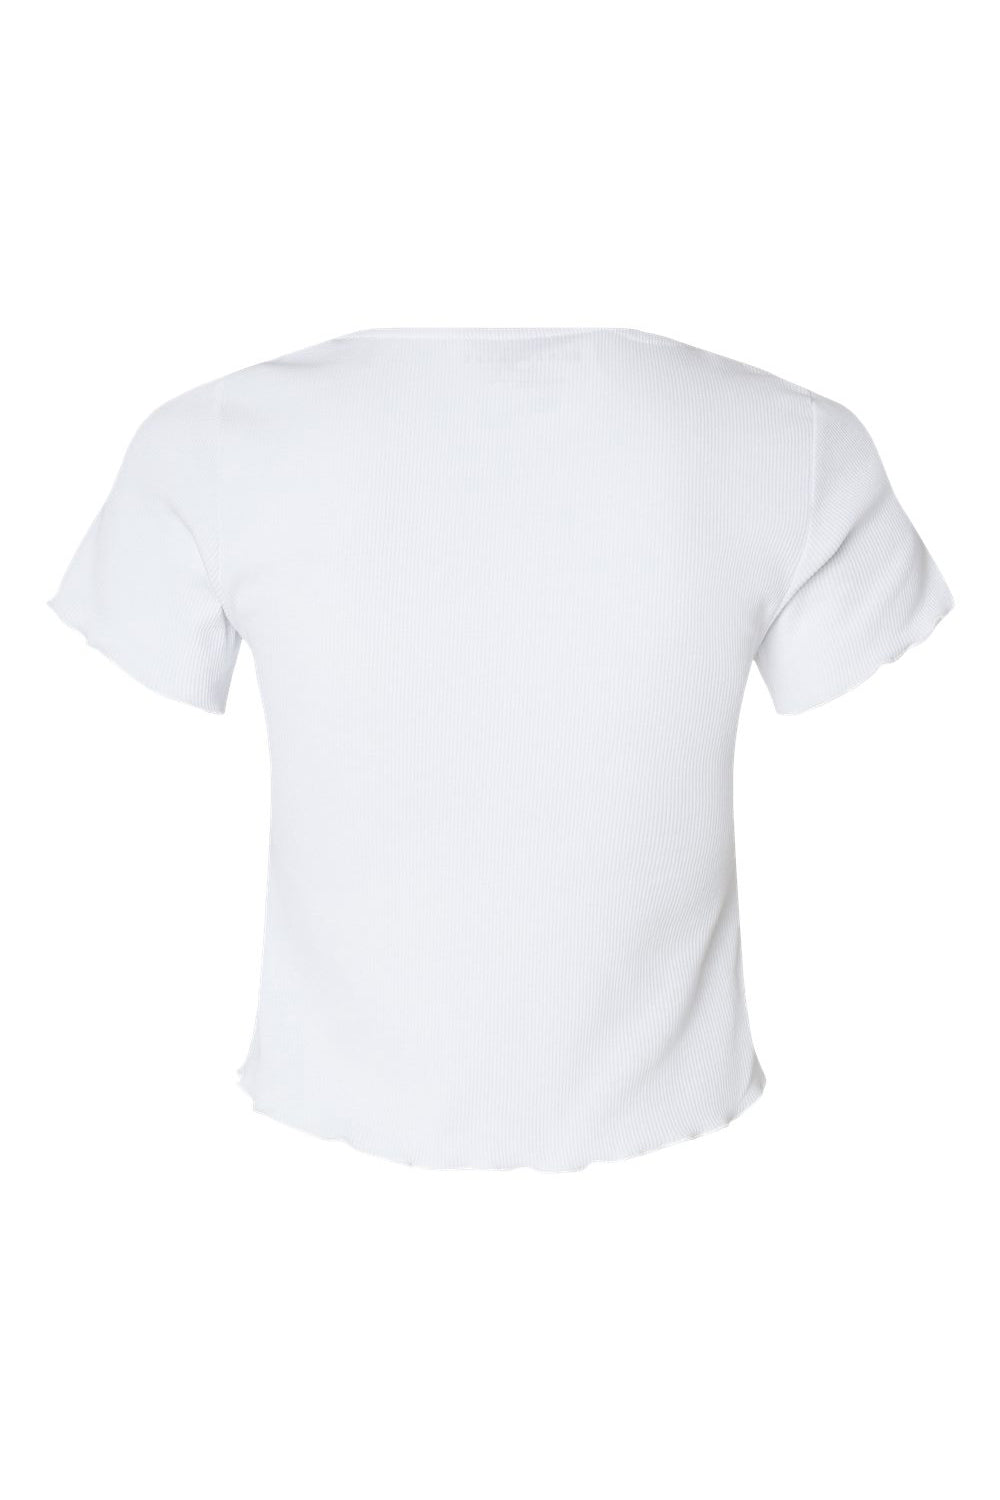 Boxercraft BW2403 Womens Baby Rib Short Sleeve Scoop Neck T-Shirt White Flat Back